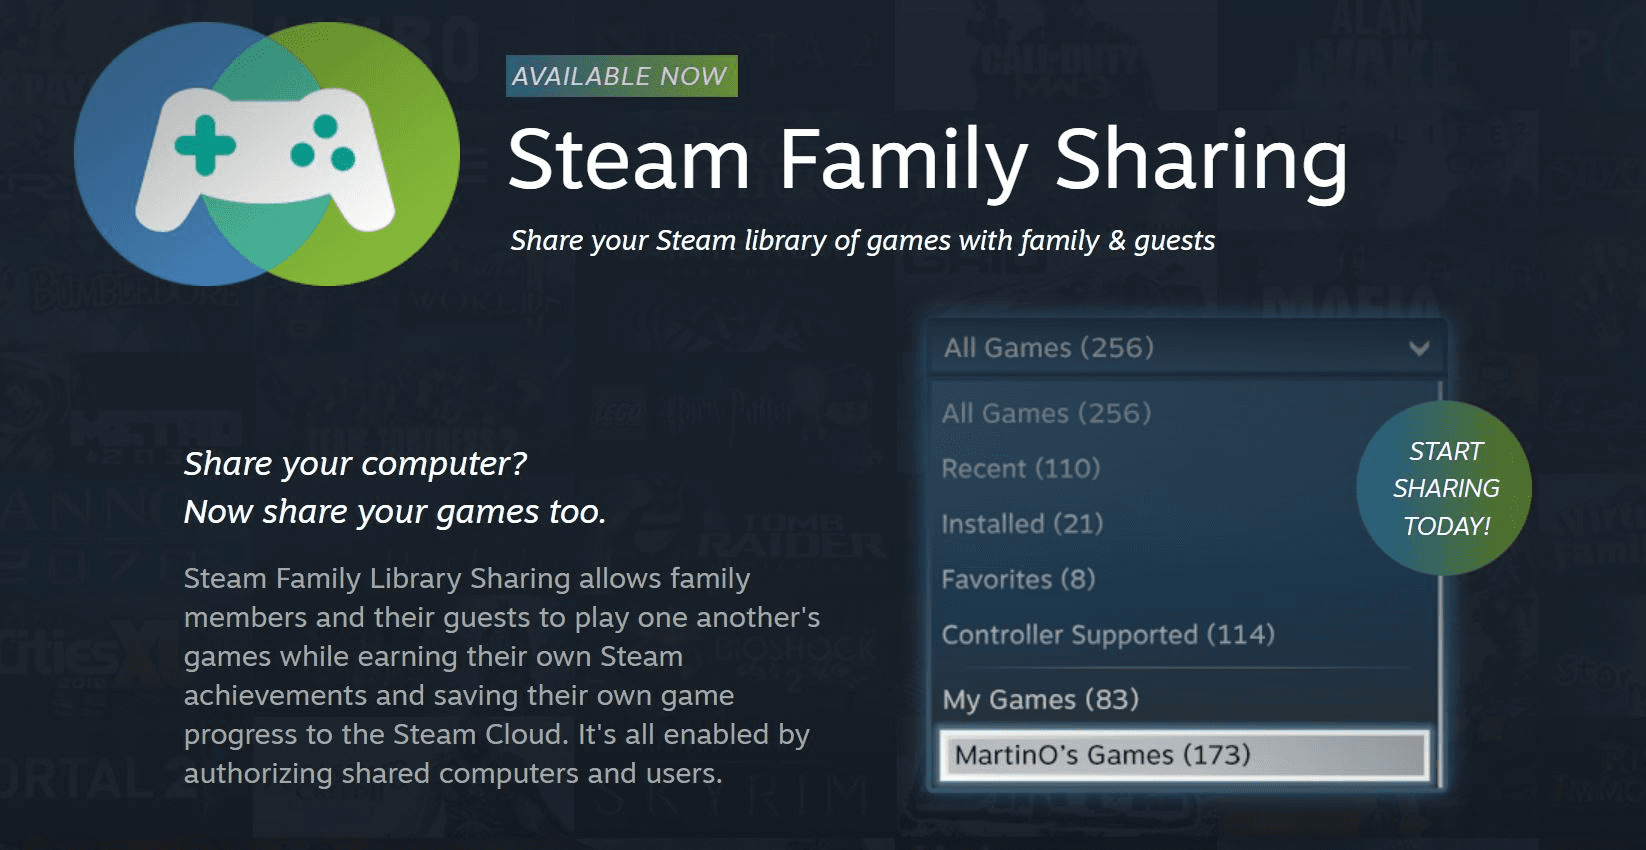 Mở thư mục cài đặt Steam và cài đặt. Chia sẻ các trò chơi trên cùng một tài khoản và sống cuộc sống công nghệ đó